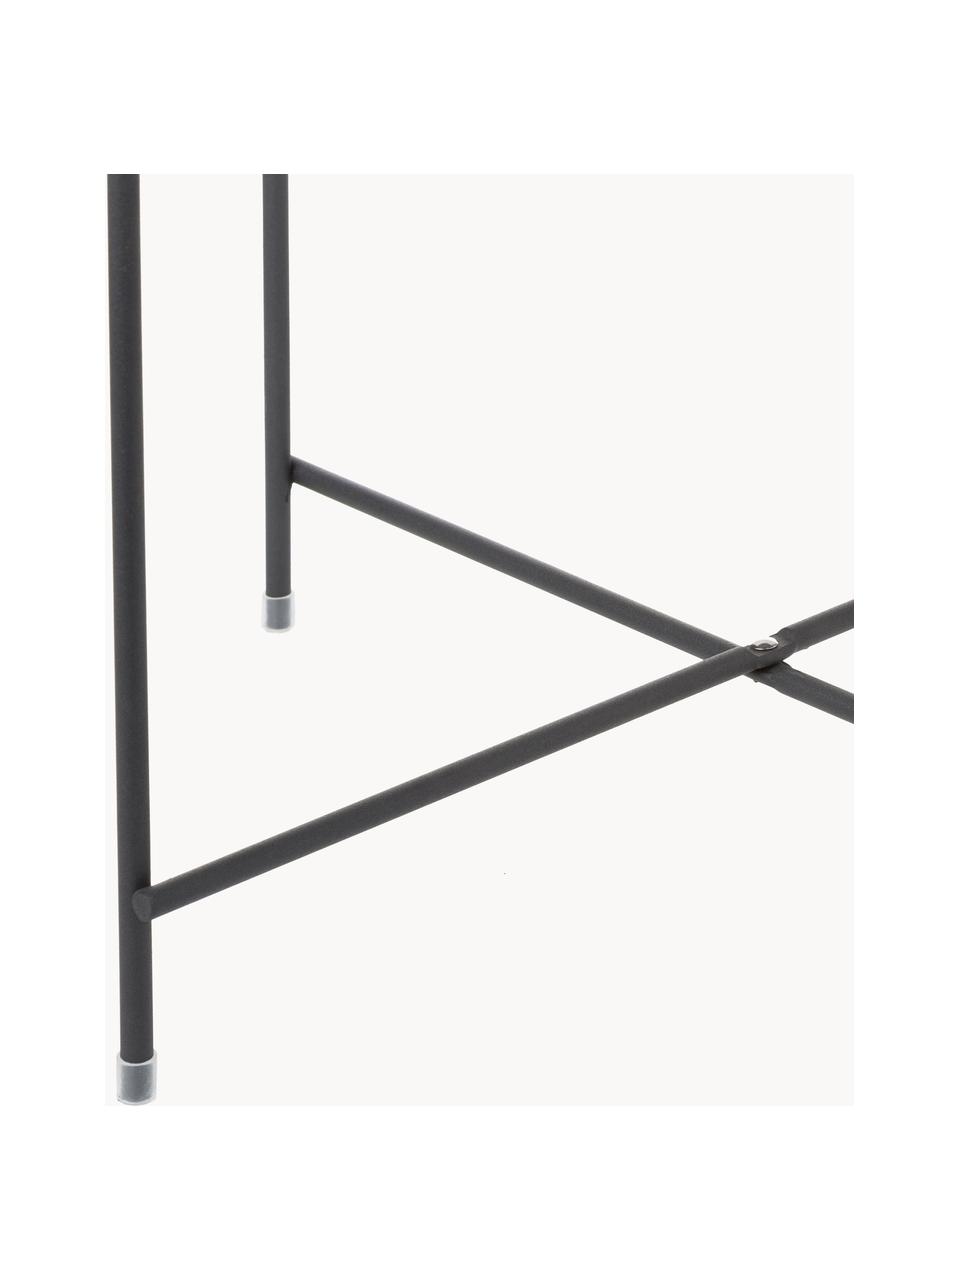 Table d'appoint pliante avec plateau amovible Cupid, Noir, Ø 43 x haut. 45 cm